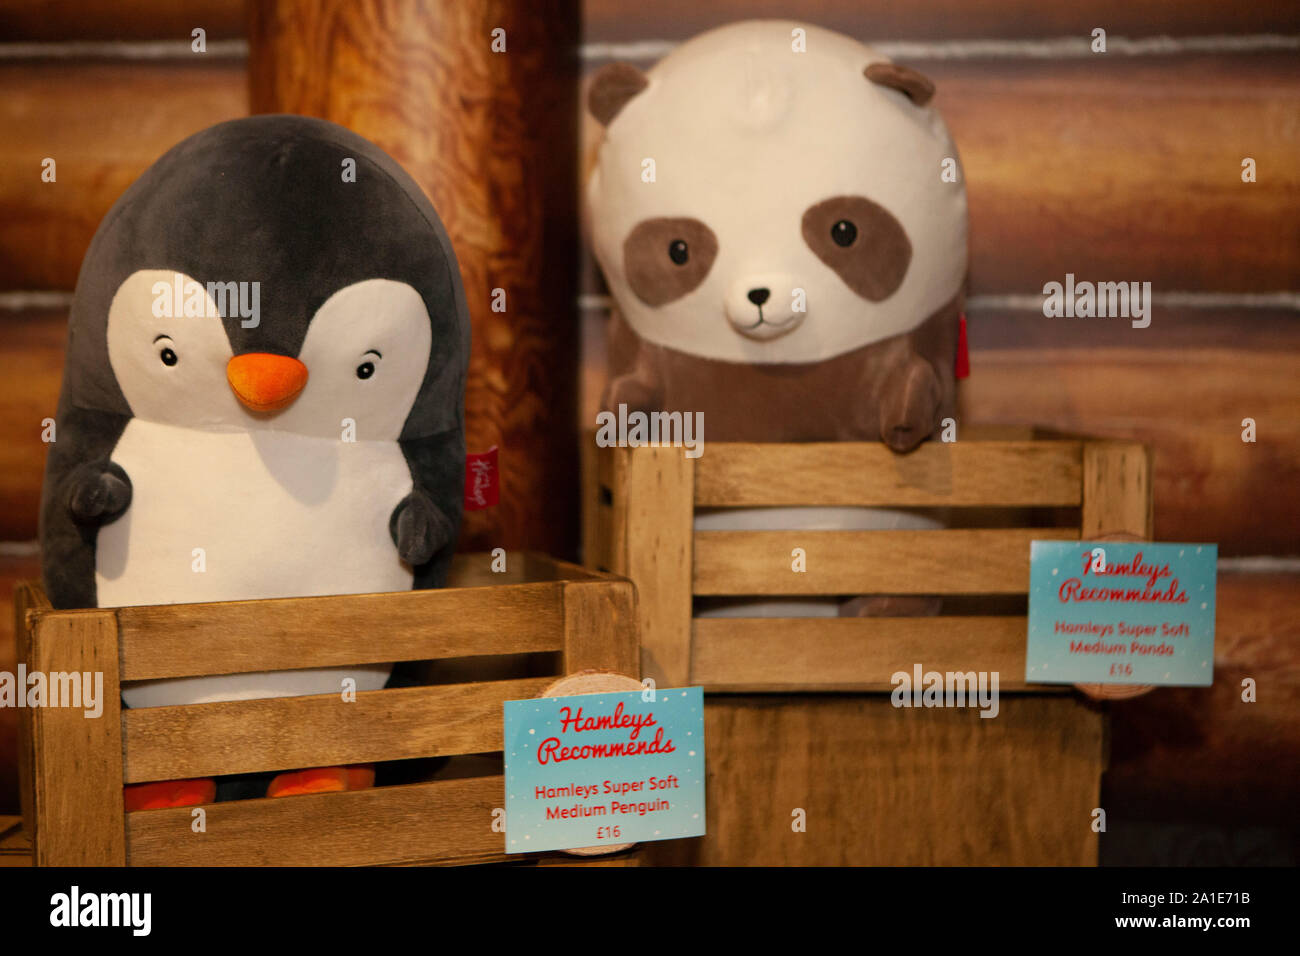 Hamleys gestartet Ihrer 10 Spielzeug für Weihnachten, einschließlich diese Hamleys Super weicher Plüsch Pinguine und Pandas. Stockfoto